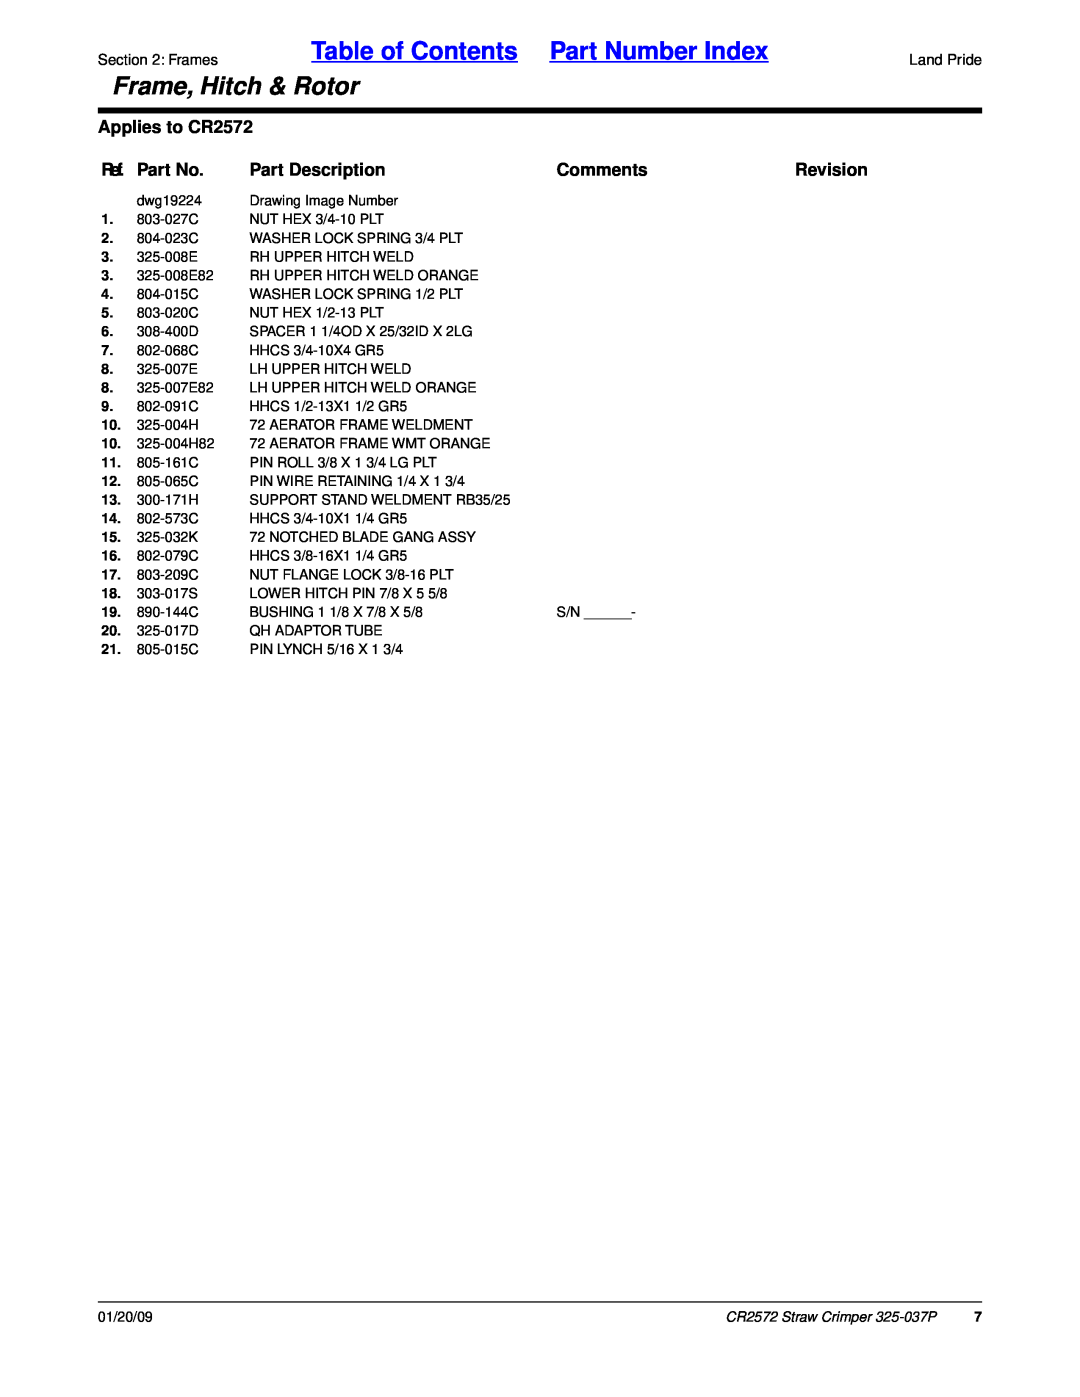 Land Pride CR2572 manual Ref. Part No, Part Description, Comments, Revision, Table of Contents Part Number Index 